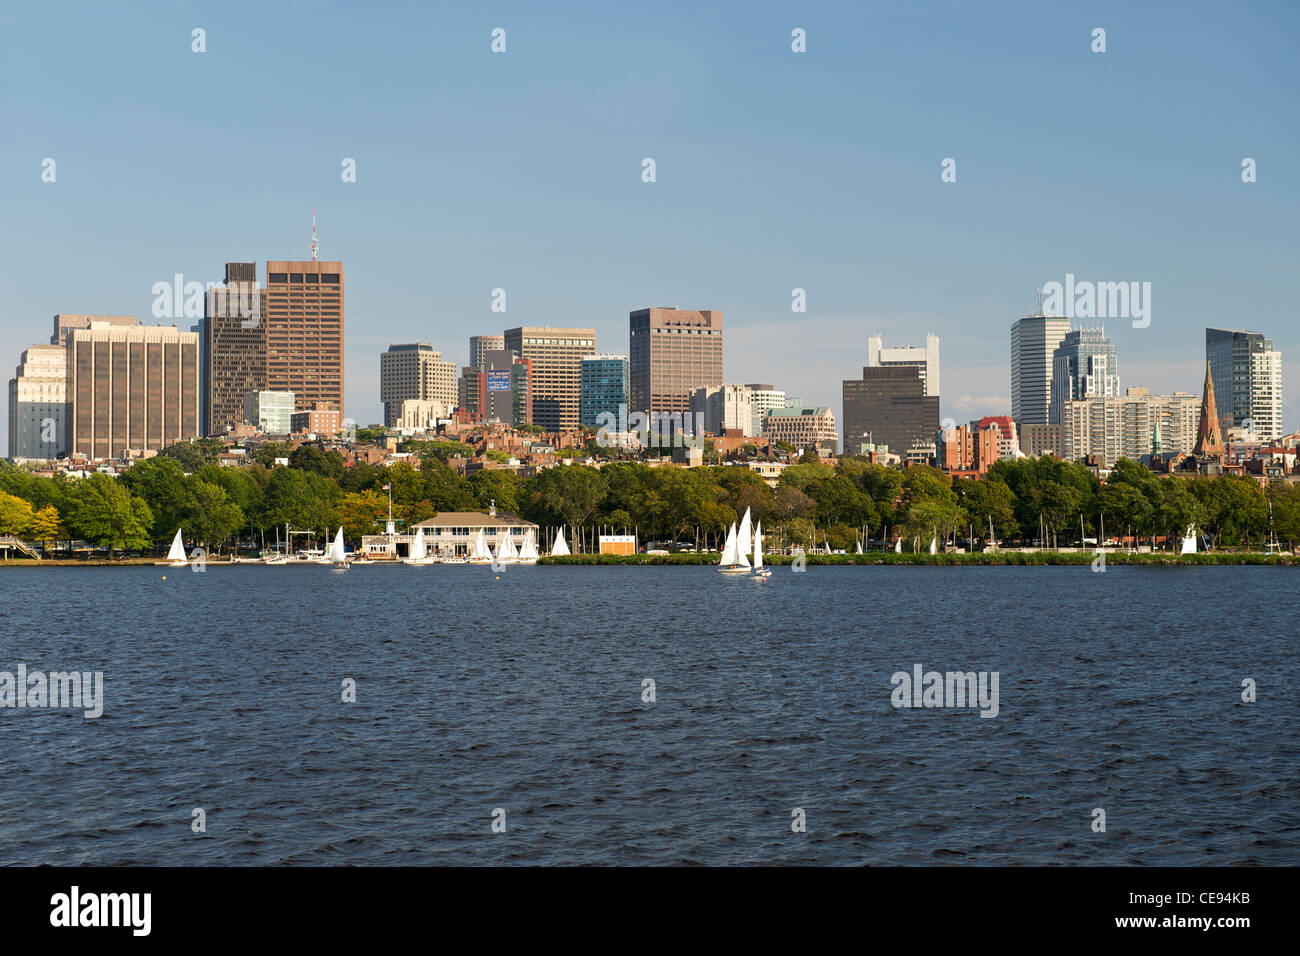 Boston skyline seen across the Charles river in Boston, Massachusetts, USA. Stock Photo